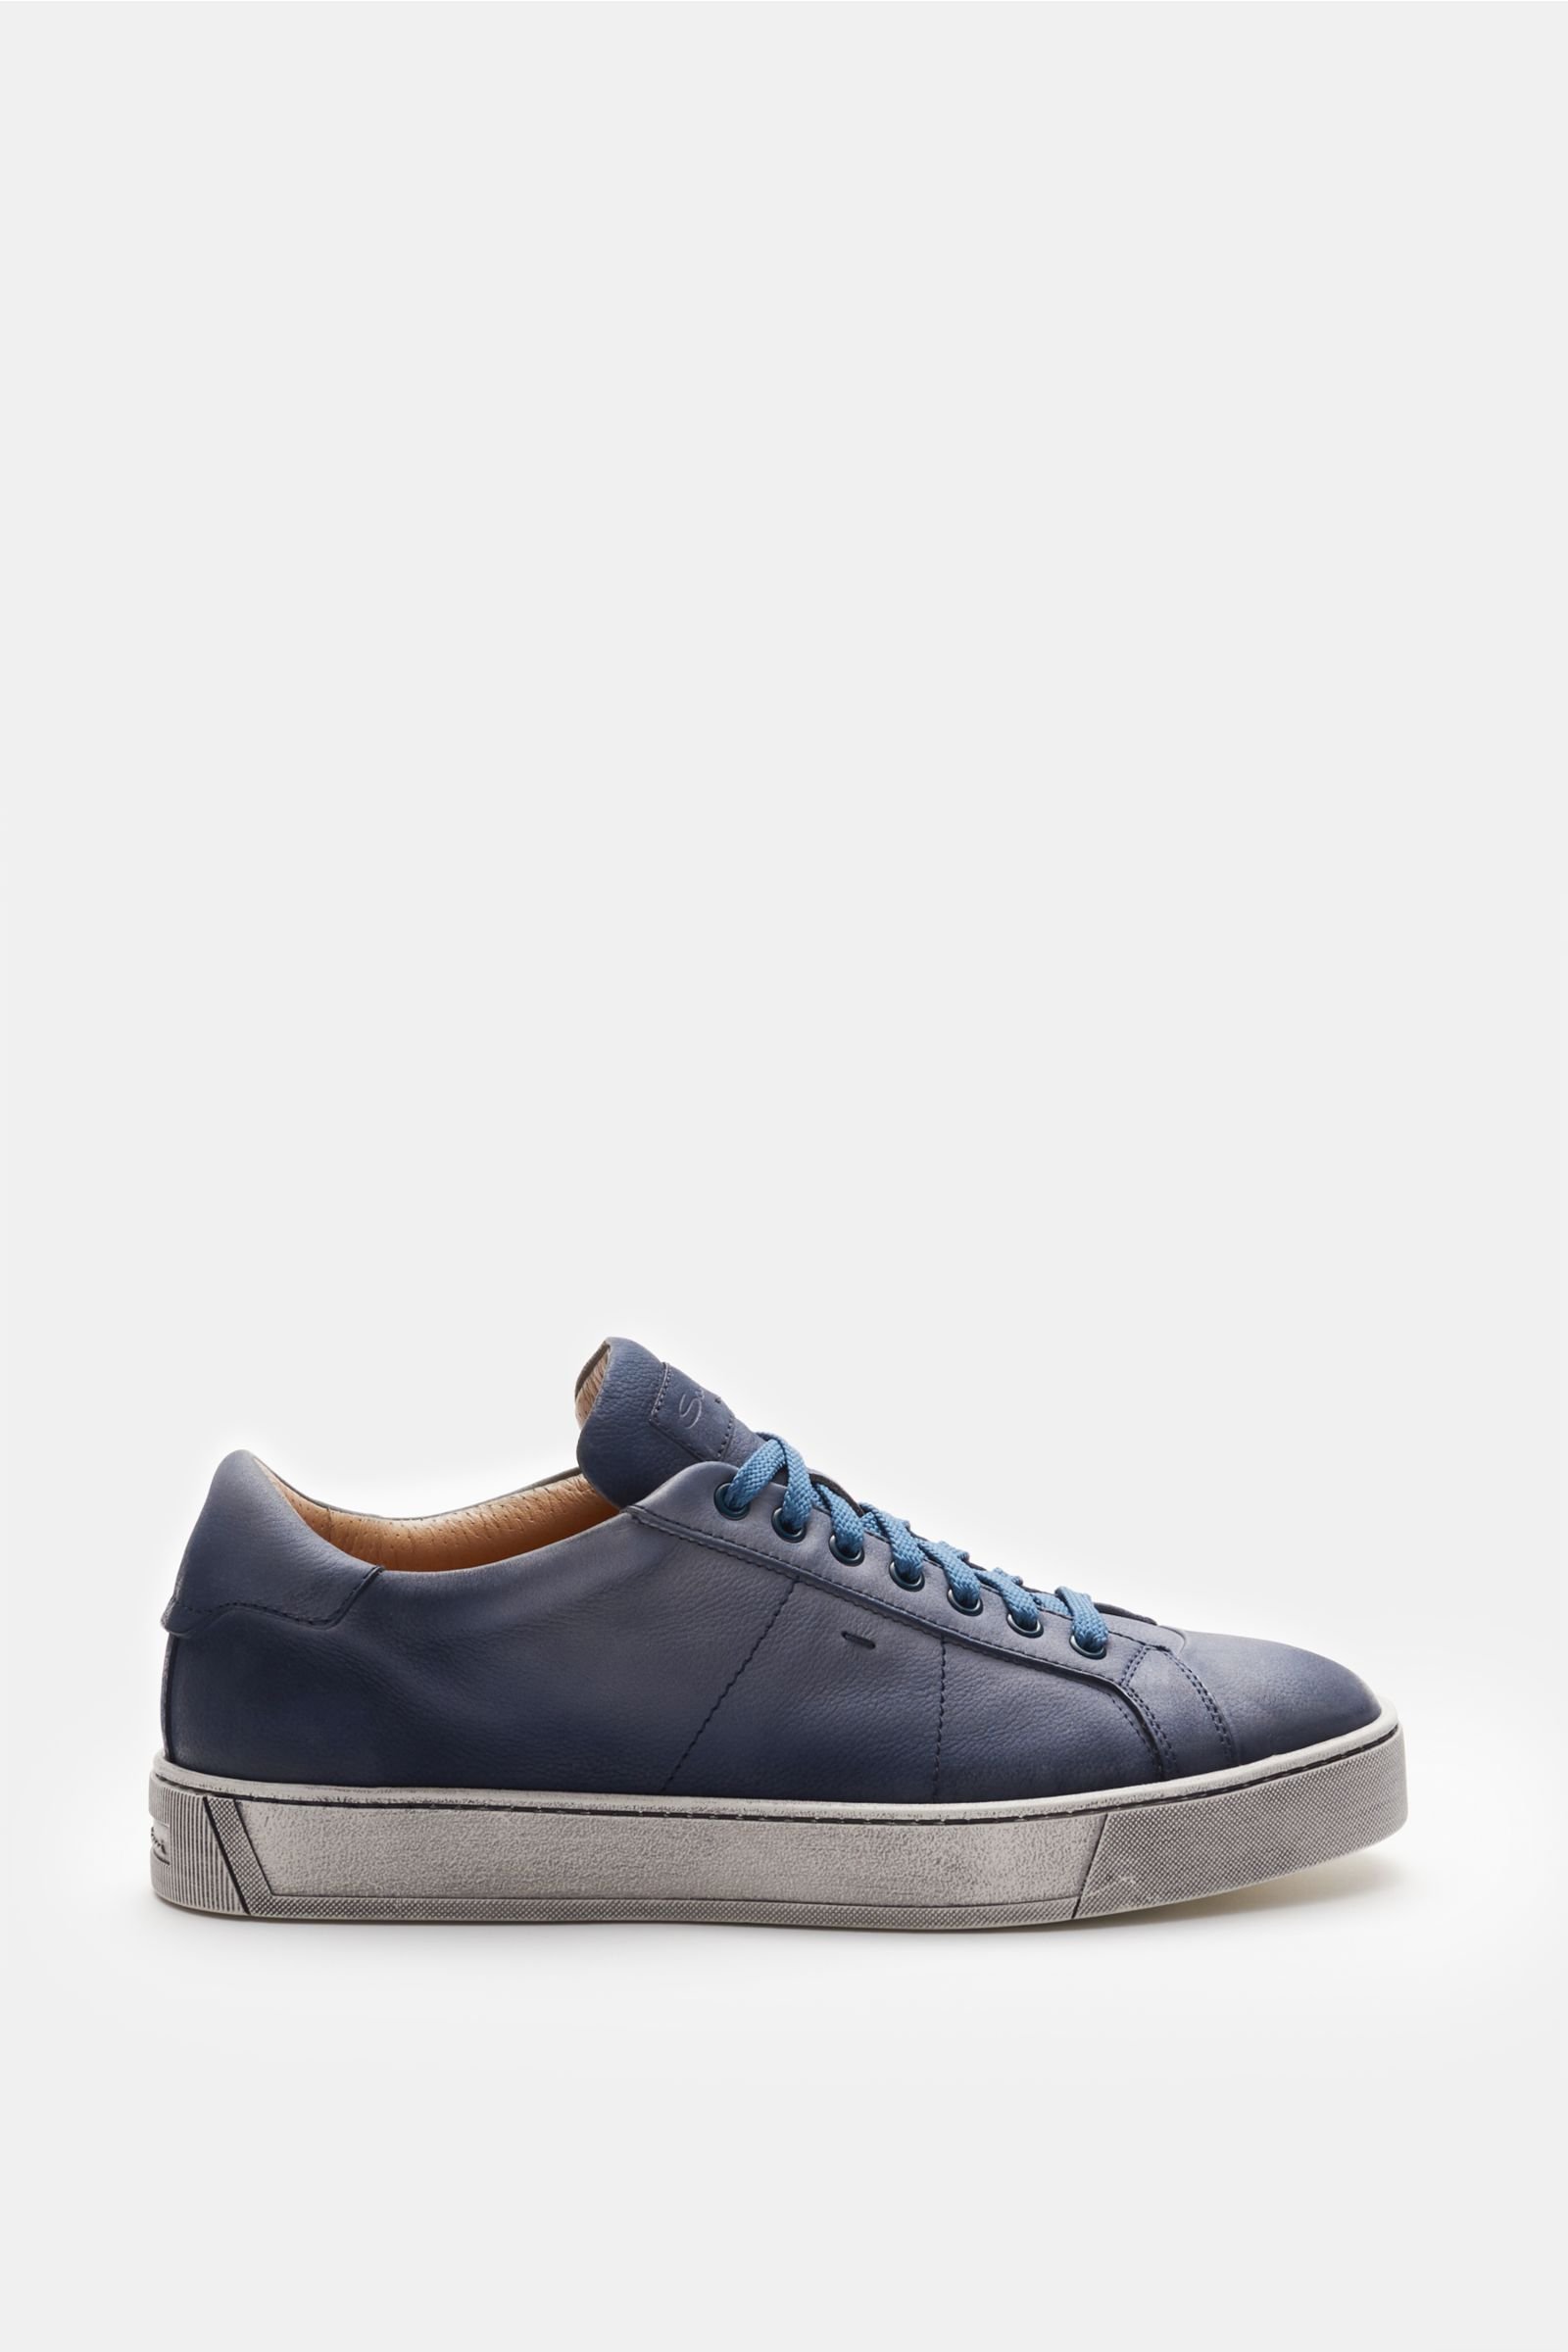 Sneakers grey-blue